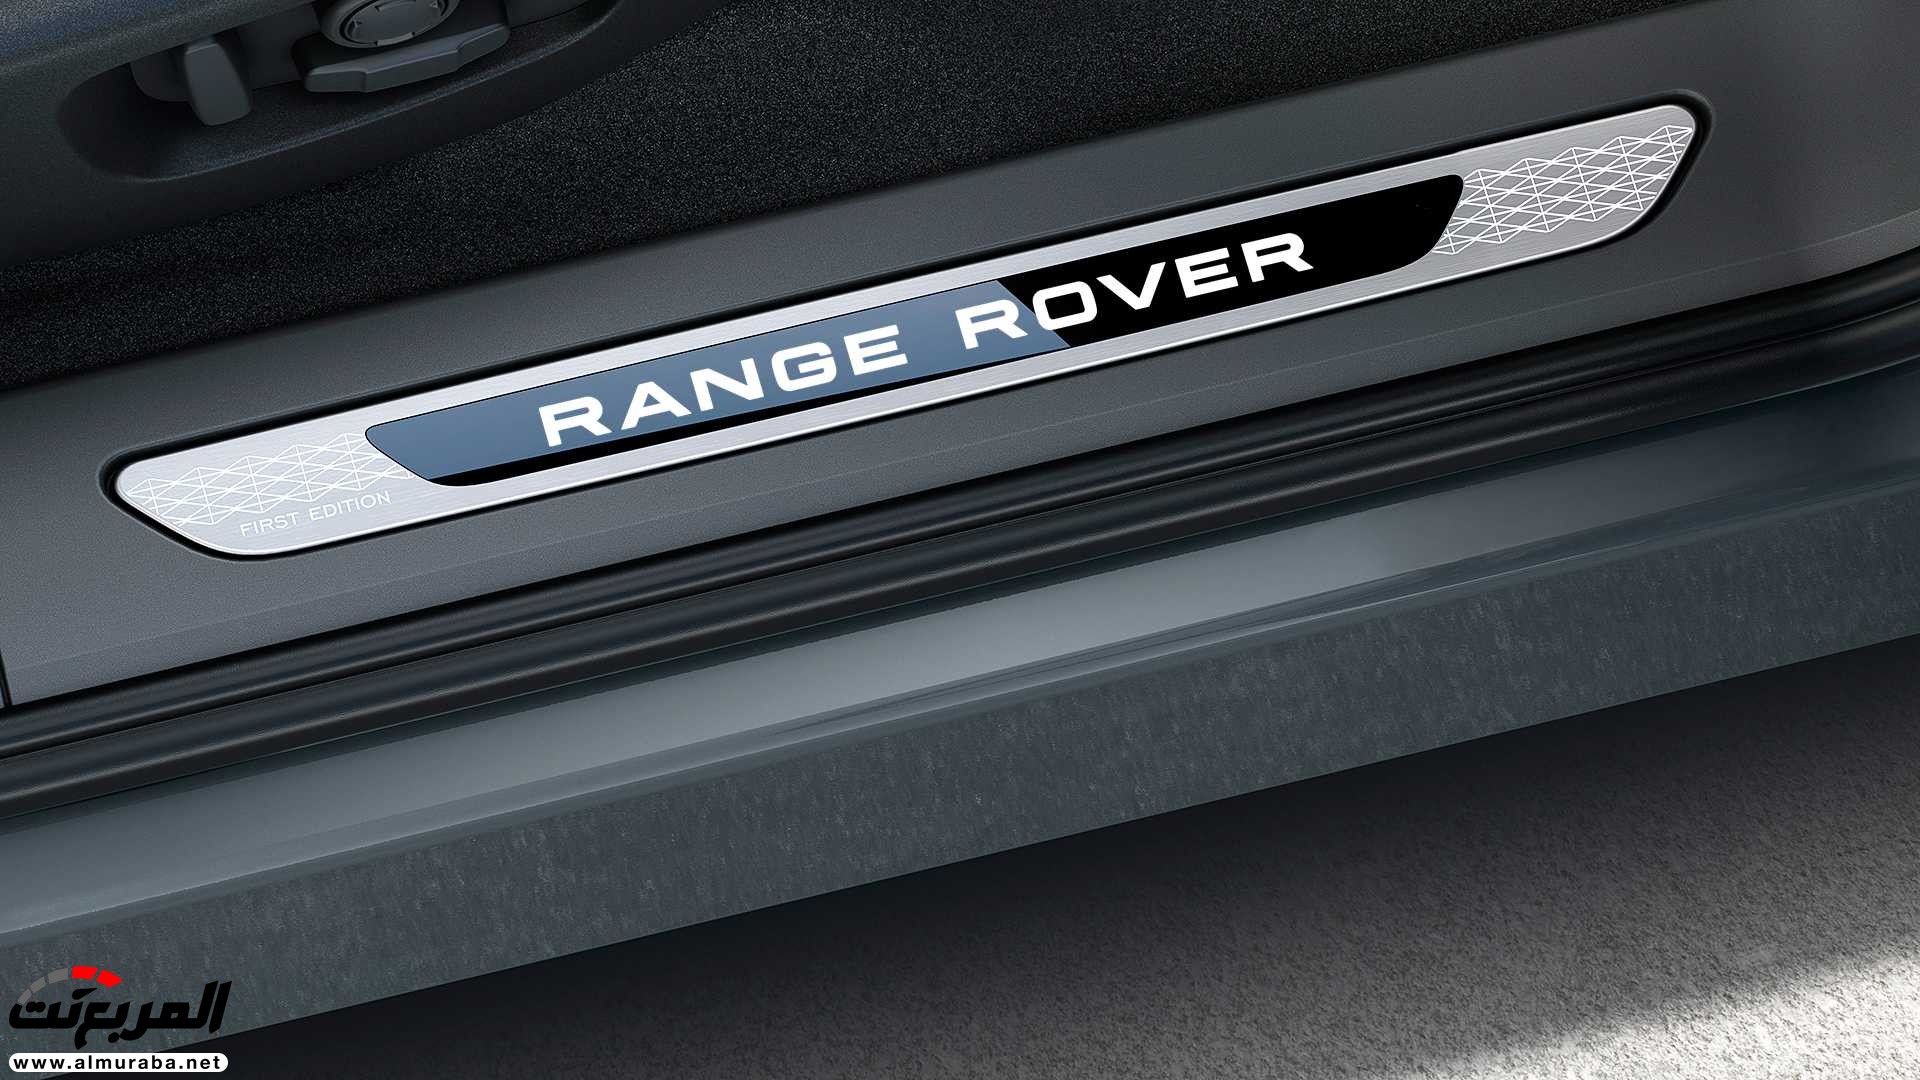 اهم 7 معلومات عن رنج روفر ايفوك 2020 الجديدة كلياً Range Rover Evoque 334